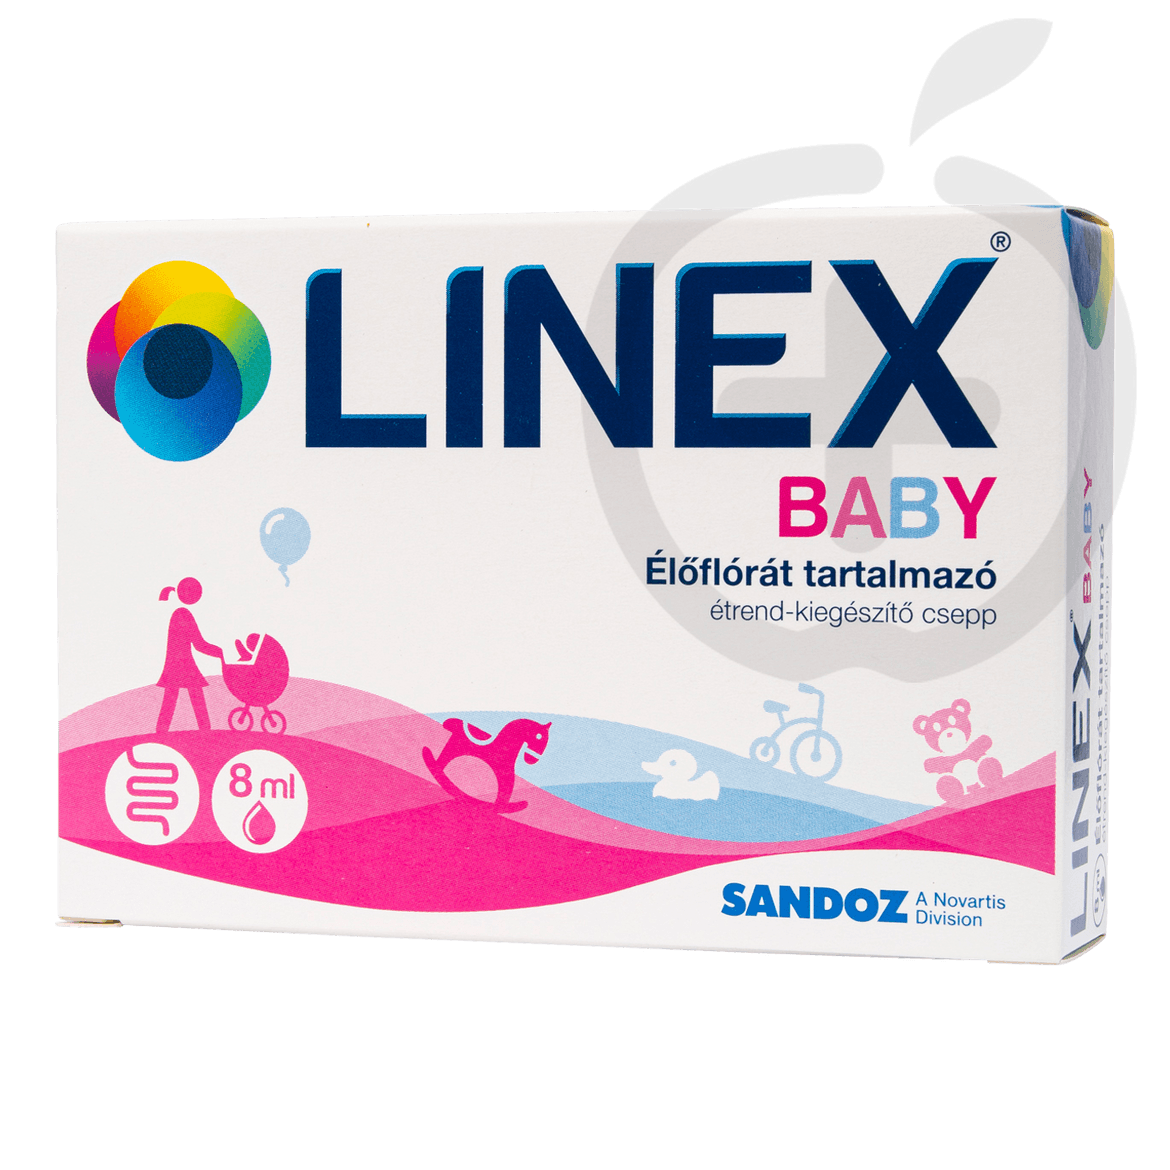 Linex Baby étrend-kiegészítő csepp